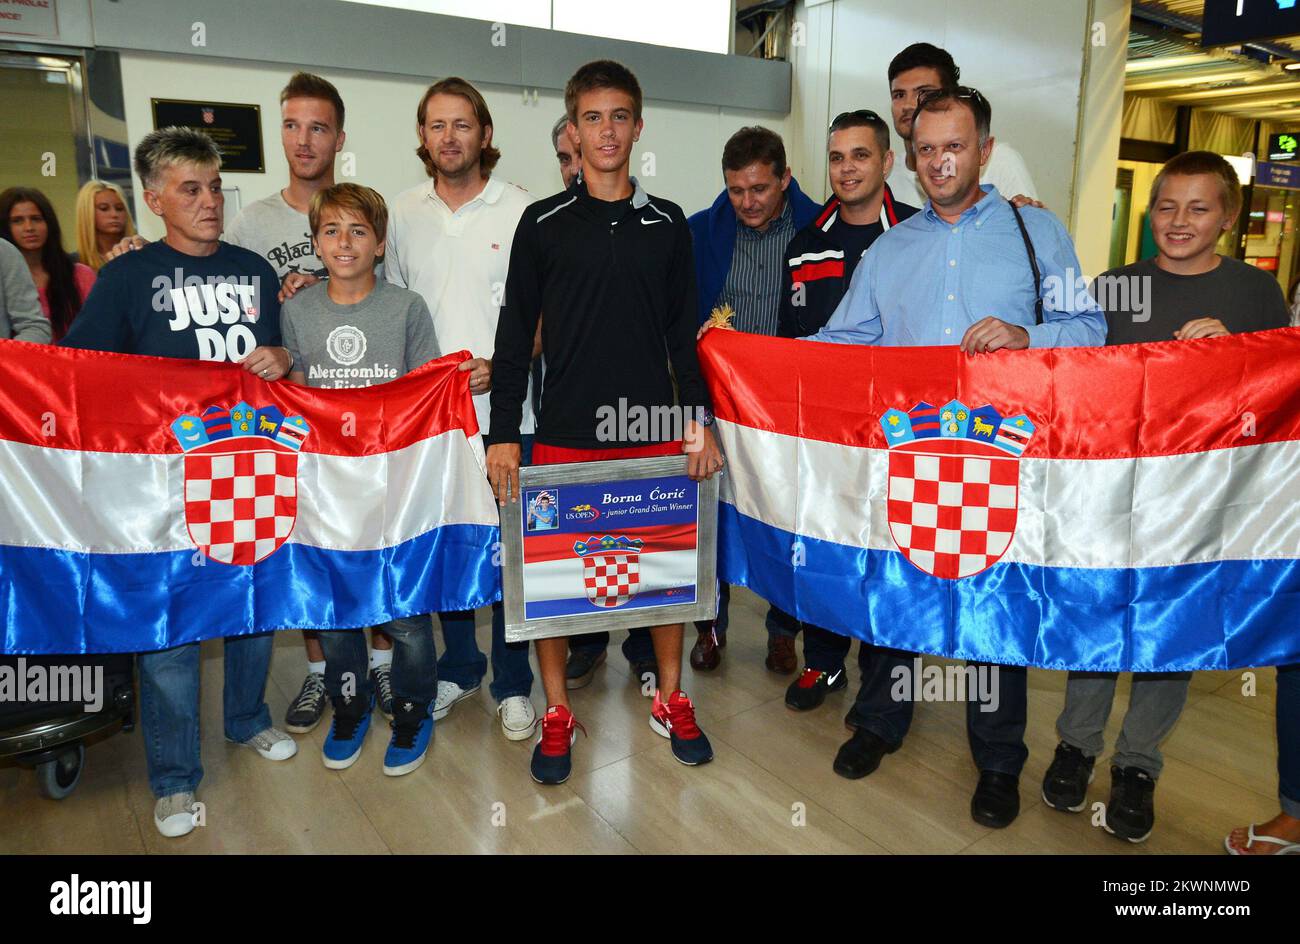 09.09.2013. Zagreb,Croatia  - Airport Zagreb.Croatian Win Junior Titles at US Open Borna Coric arrived in Zagreb..Photo: Marko Prpic/PIXSELL Stock Photo